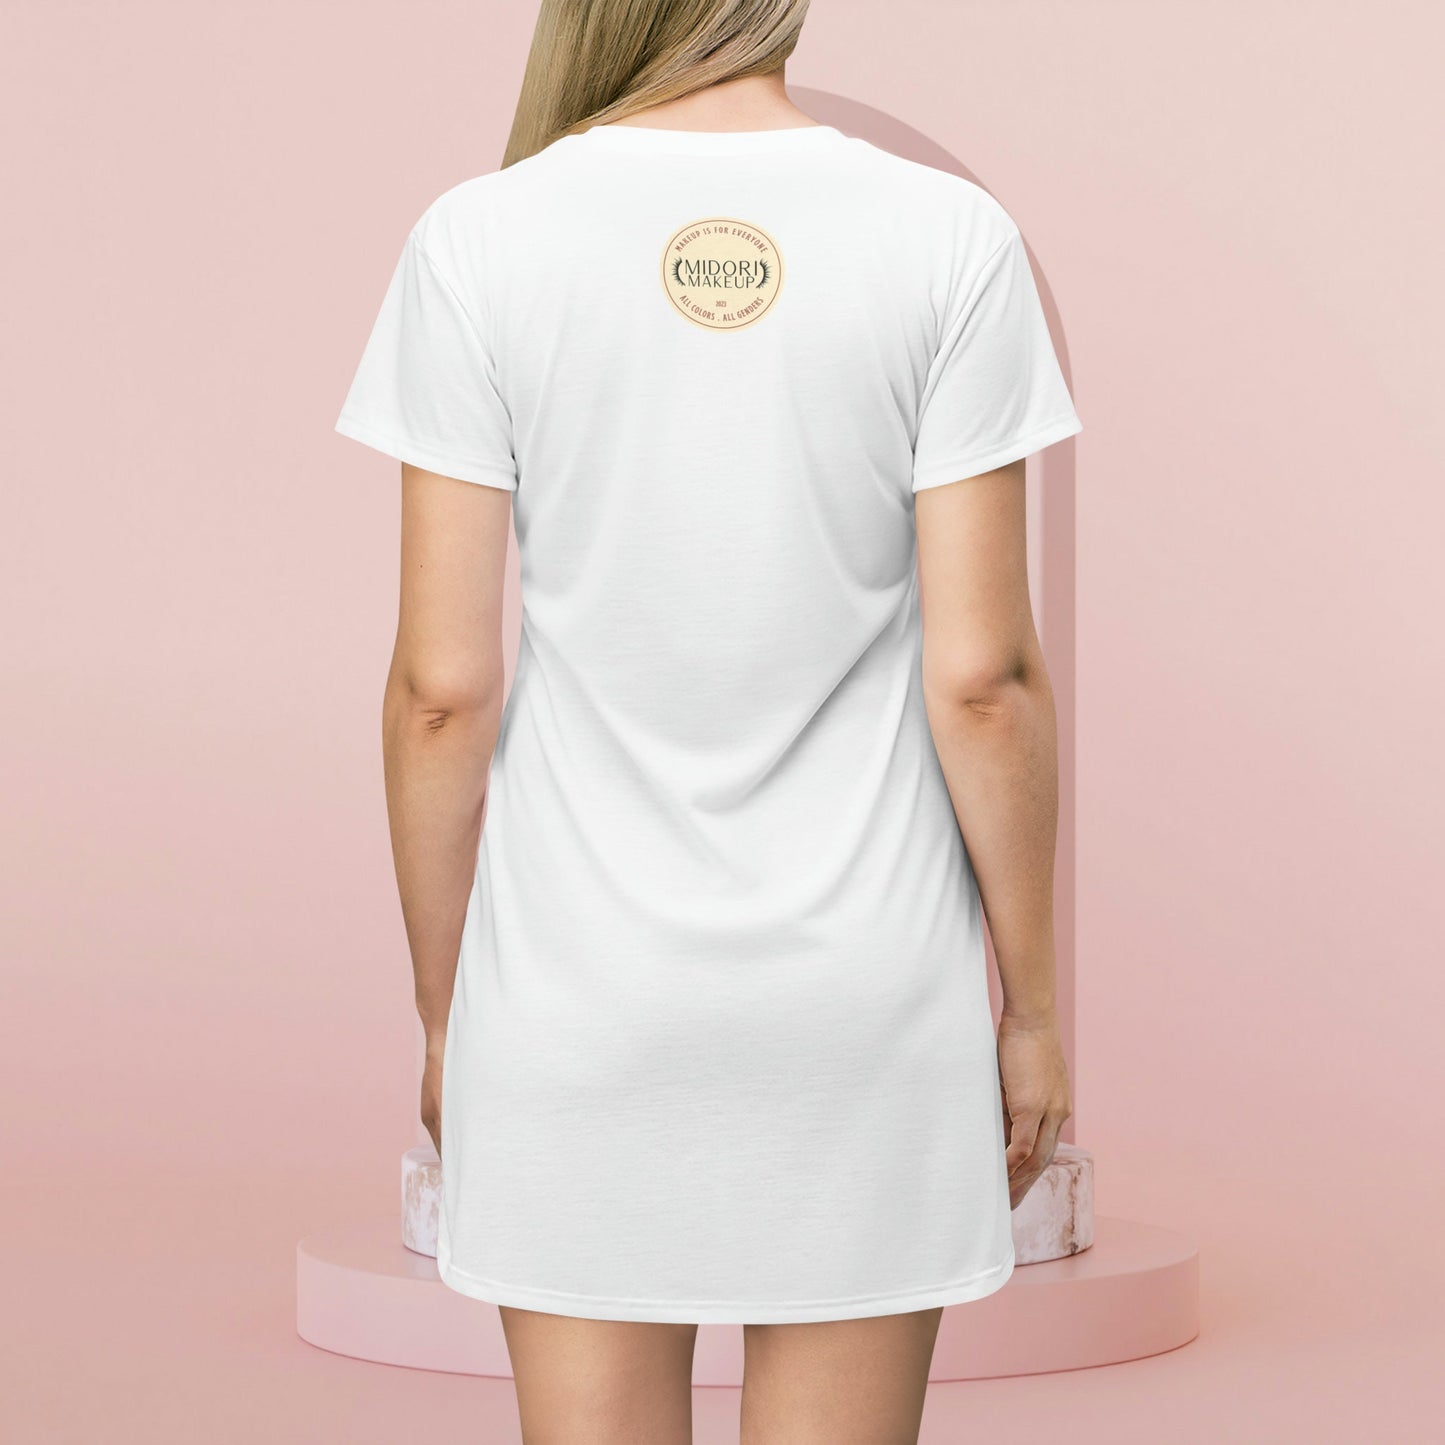 Makeup Artist T-Shirt Dress Gift Oversized Tshirt Womens Gift for Her Tee MUA Shirt Dress Uniform Cosmetology Grad Tshirt Beautician Gift